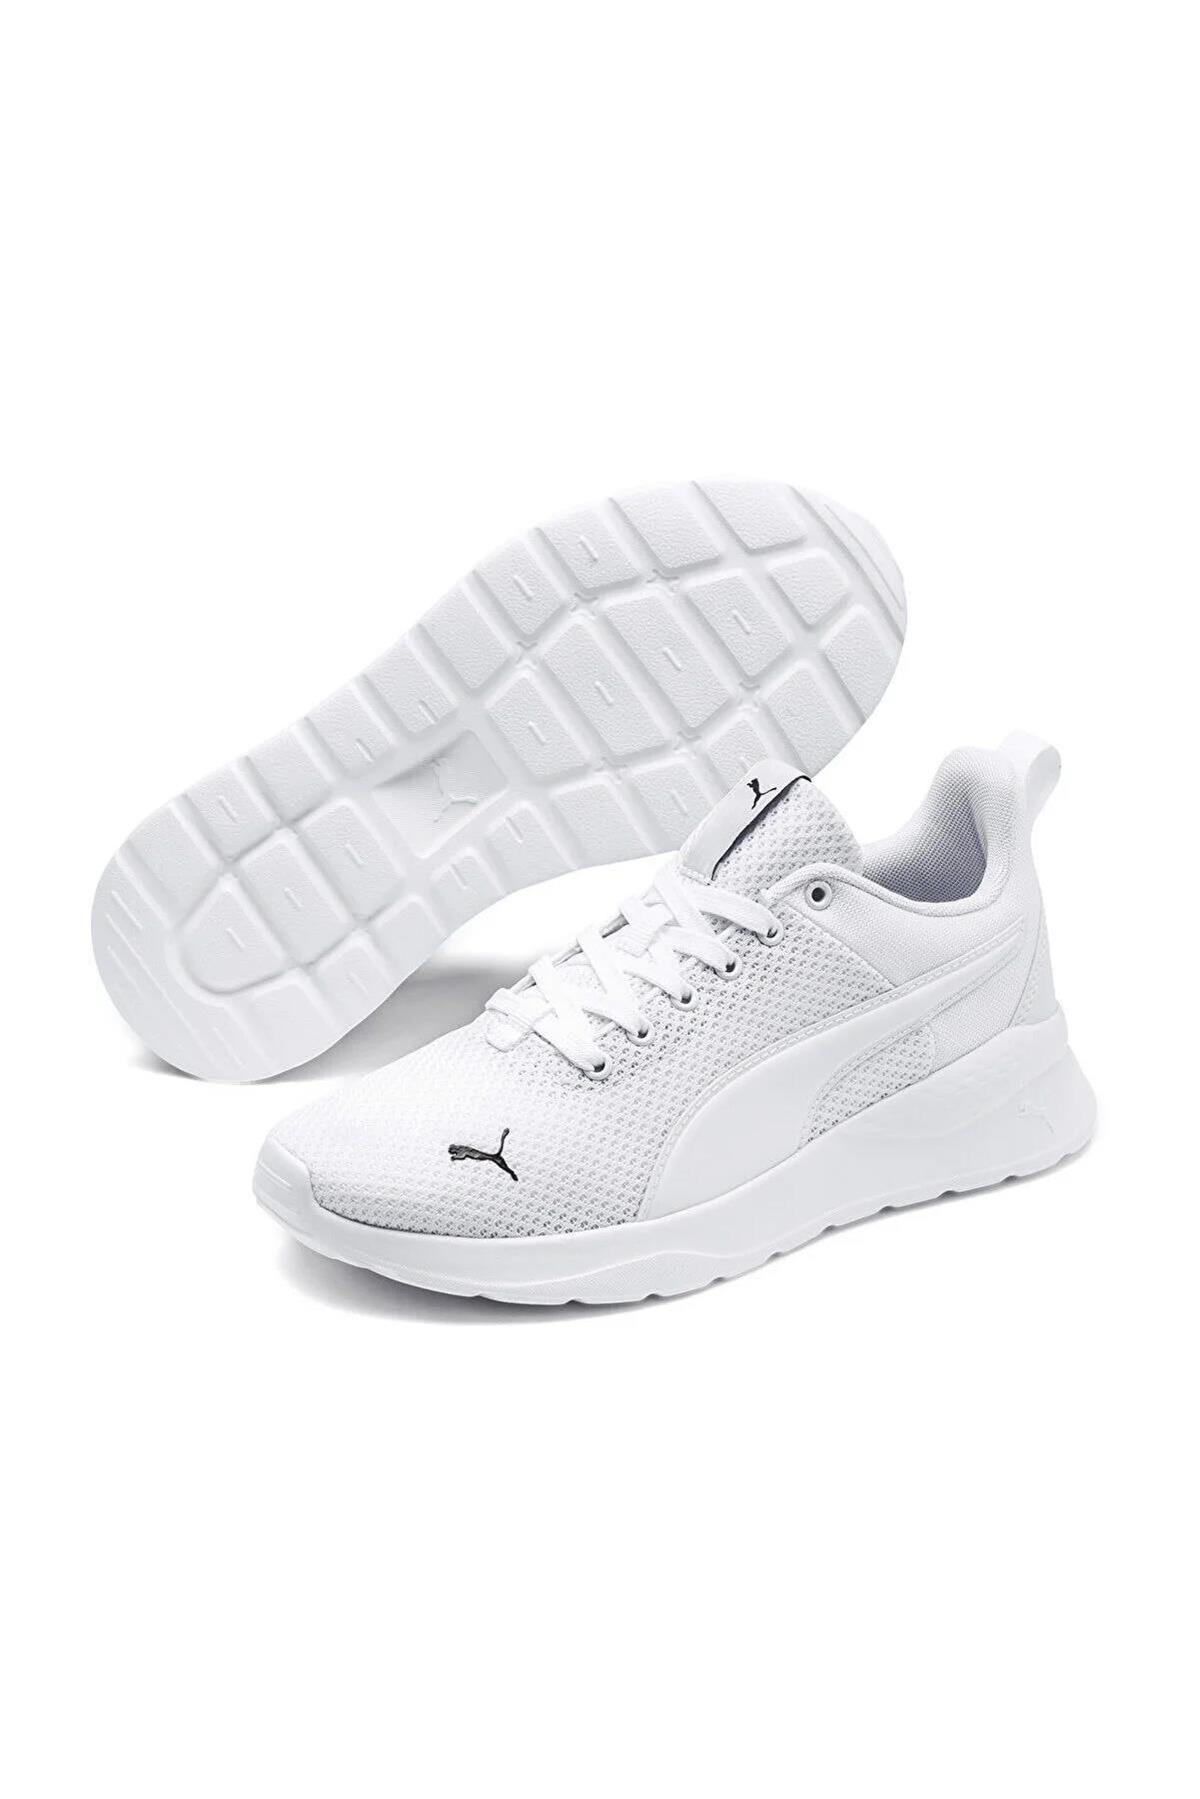 Puma 372004 Anzarun Lite Jr Beyaz-Beyaz Kadın Spor Ayakkabı - Ayakmod